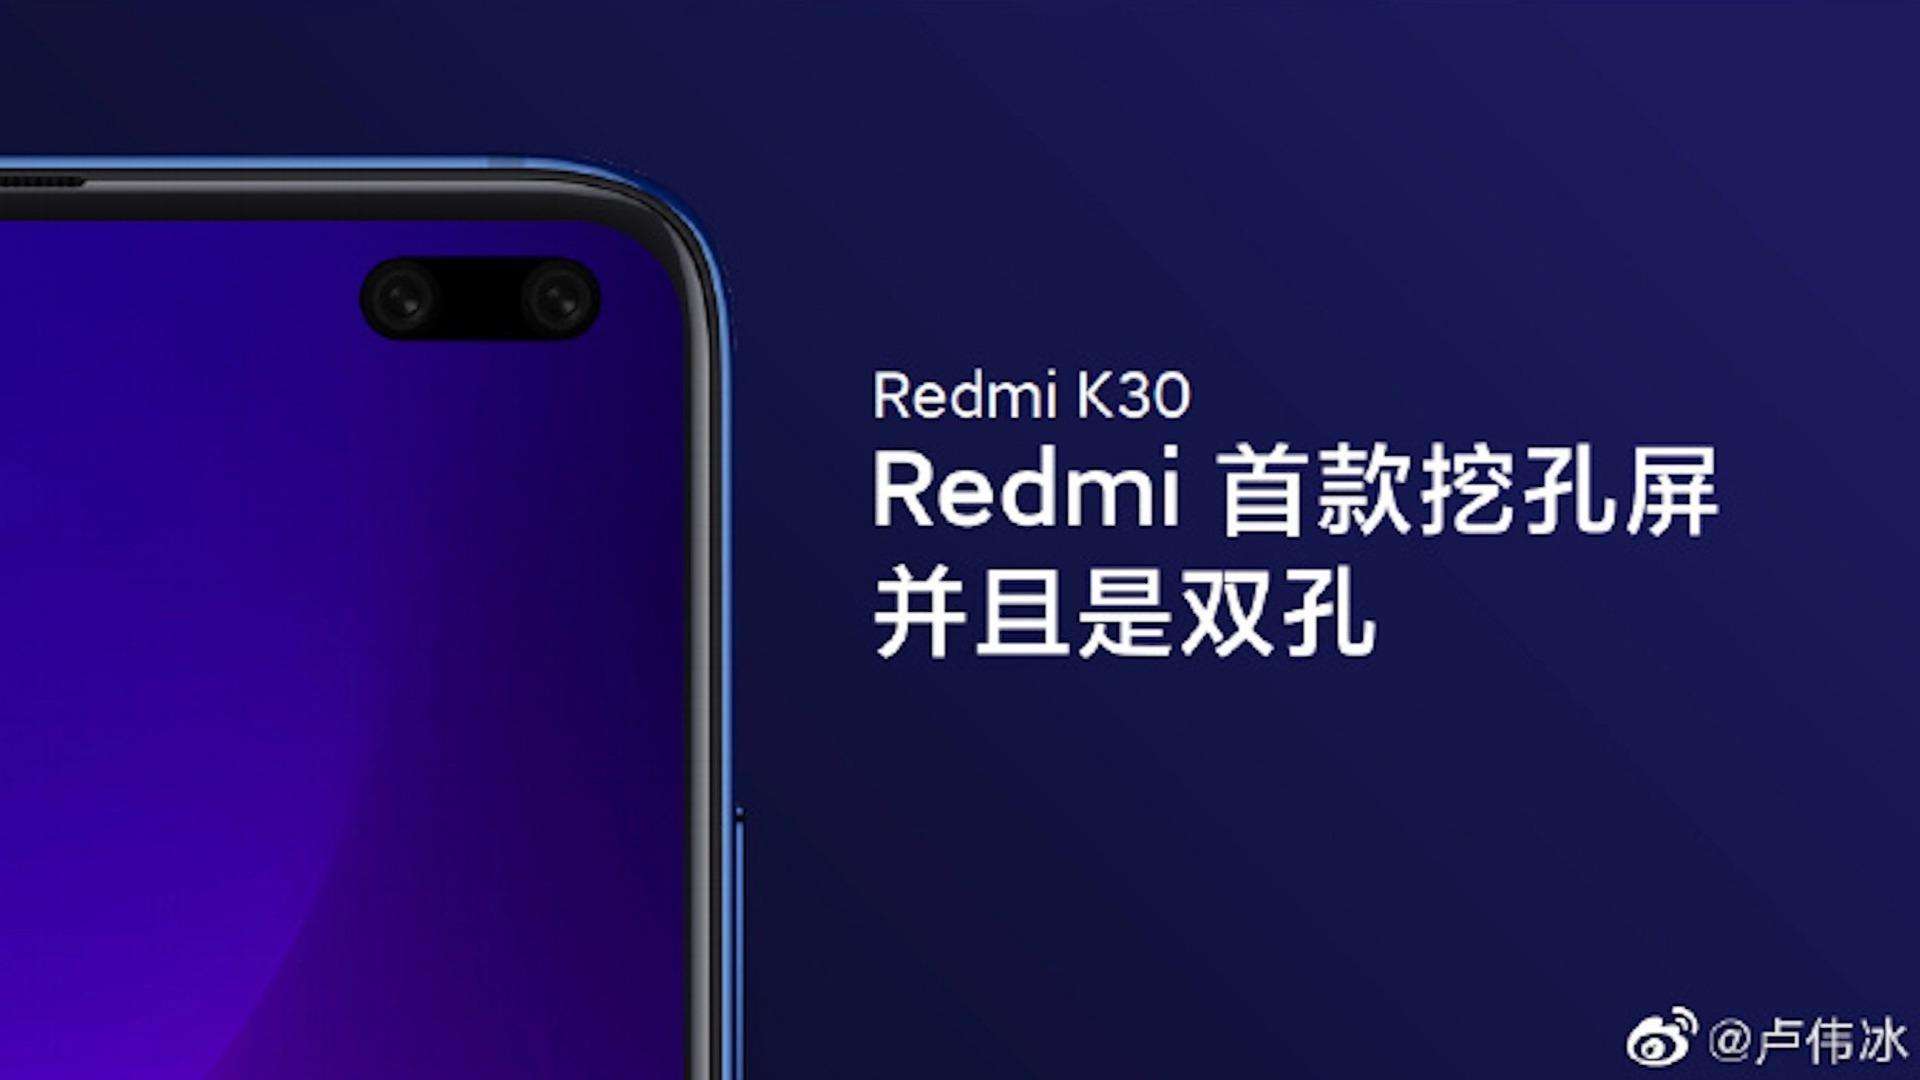  Redmi K30 में दी जायेगी 4,500mAh की बैटरी, एक घंटे में होगी फुल चार्ज